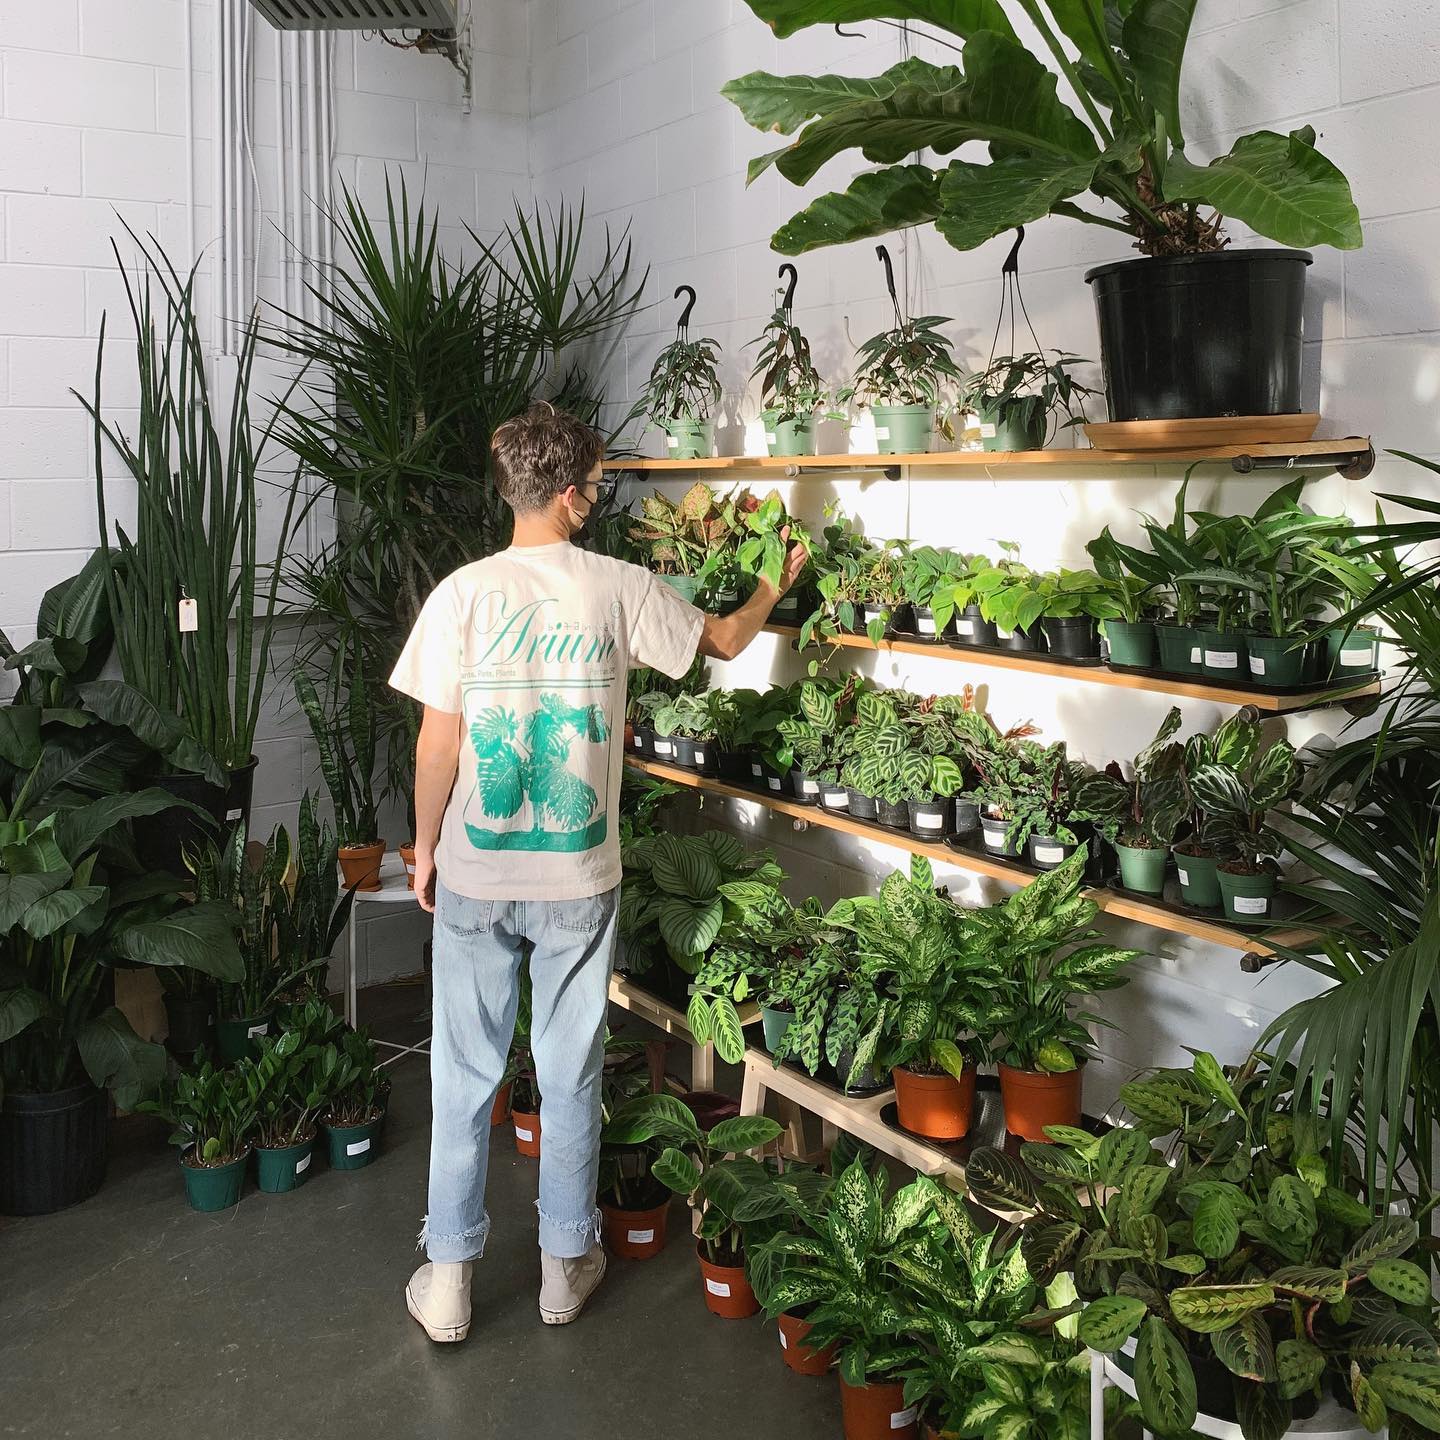 Shelves full of plants for sale